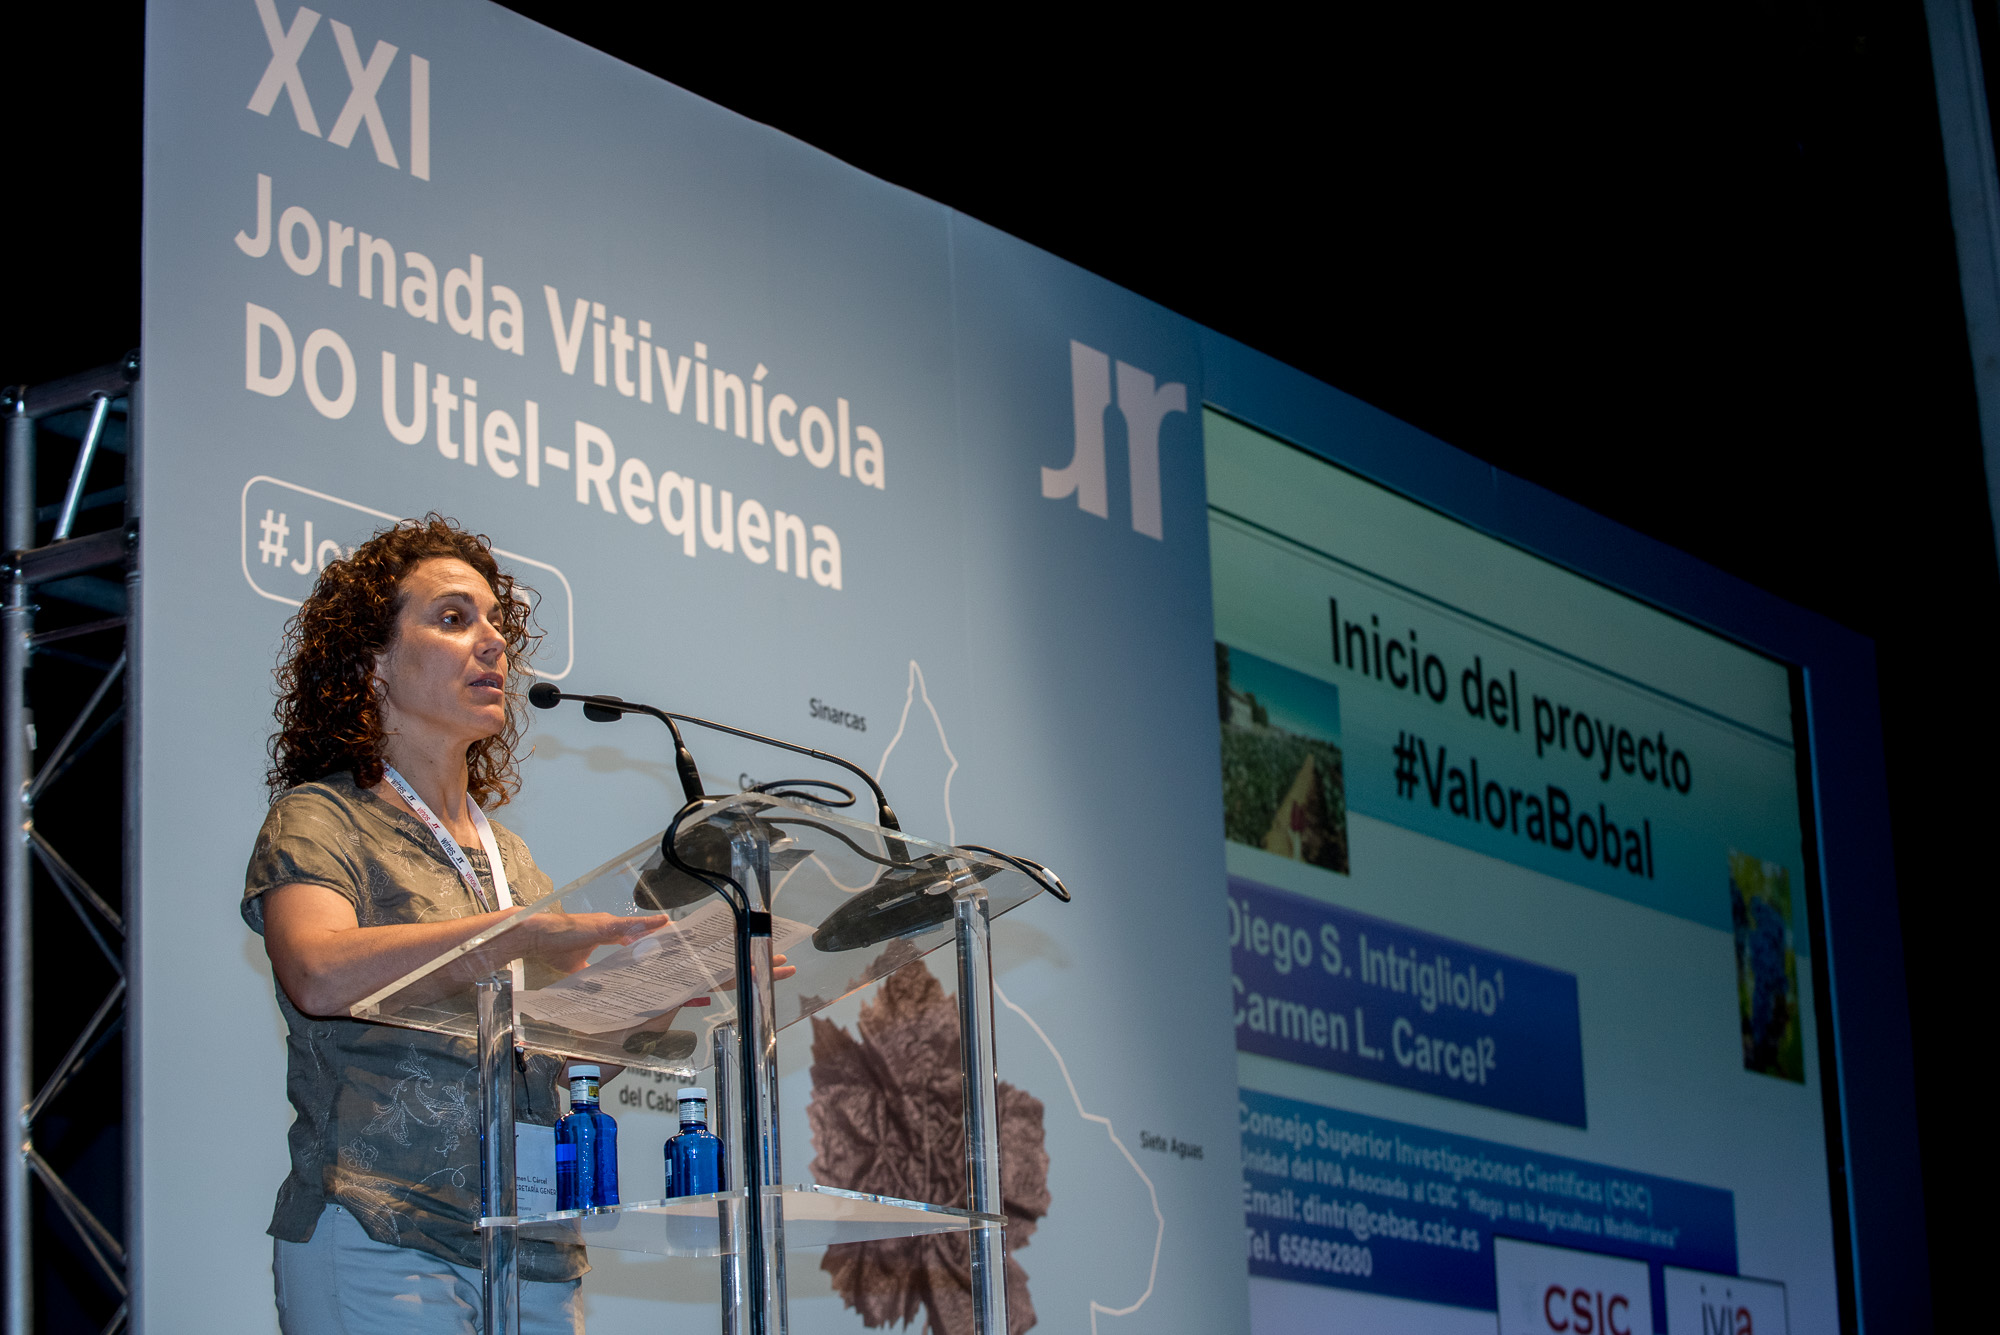 Utiel-Requena anuncia en su XXI Jornada Vitivinícola el Proyecto #ValoraBobal